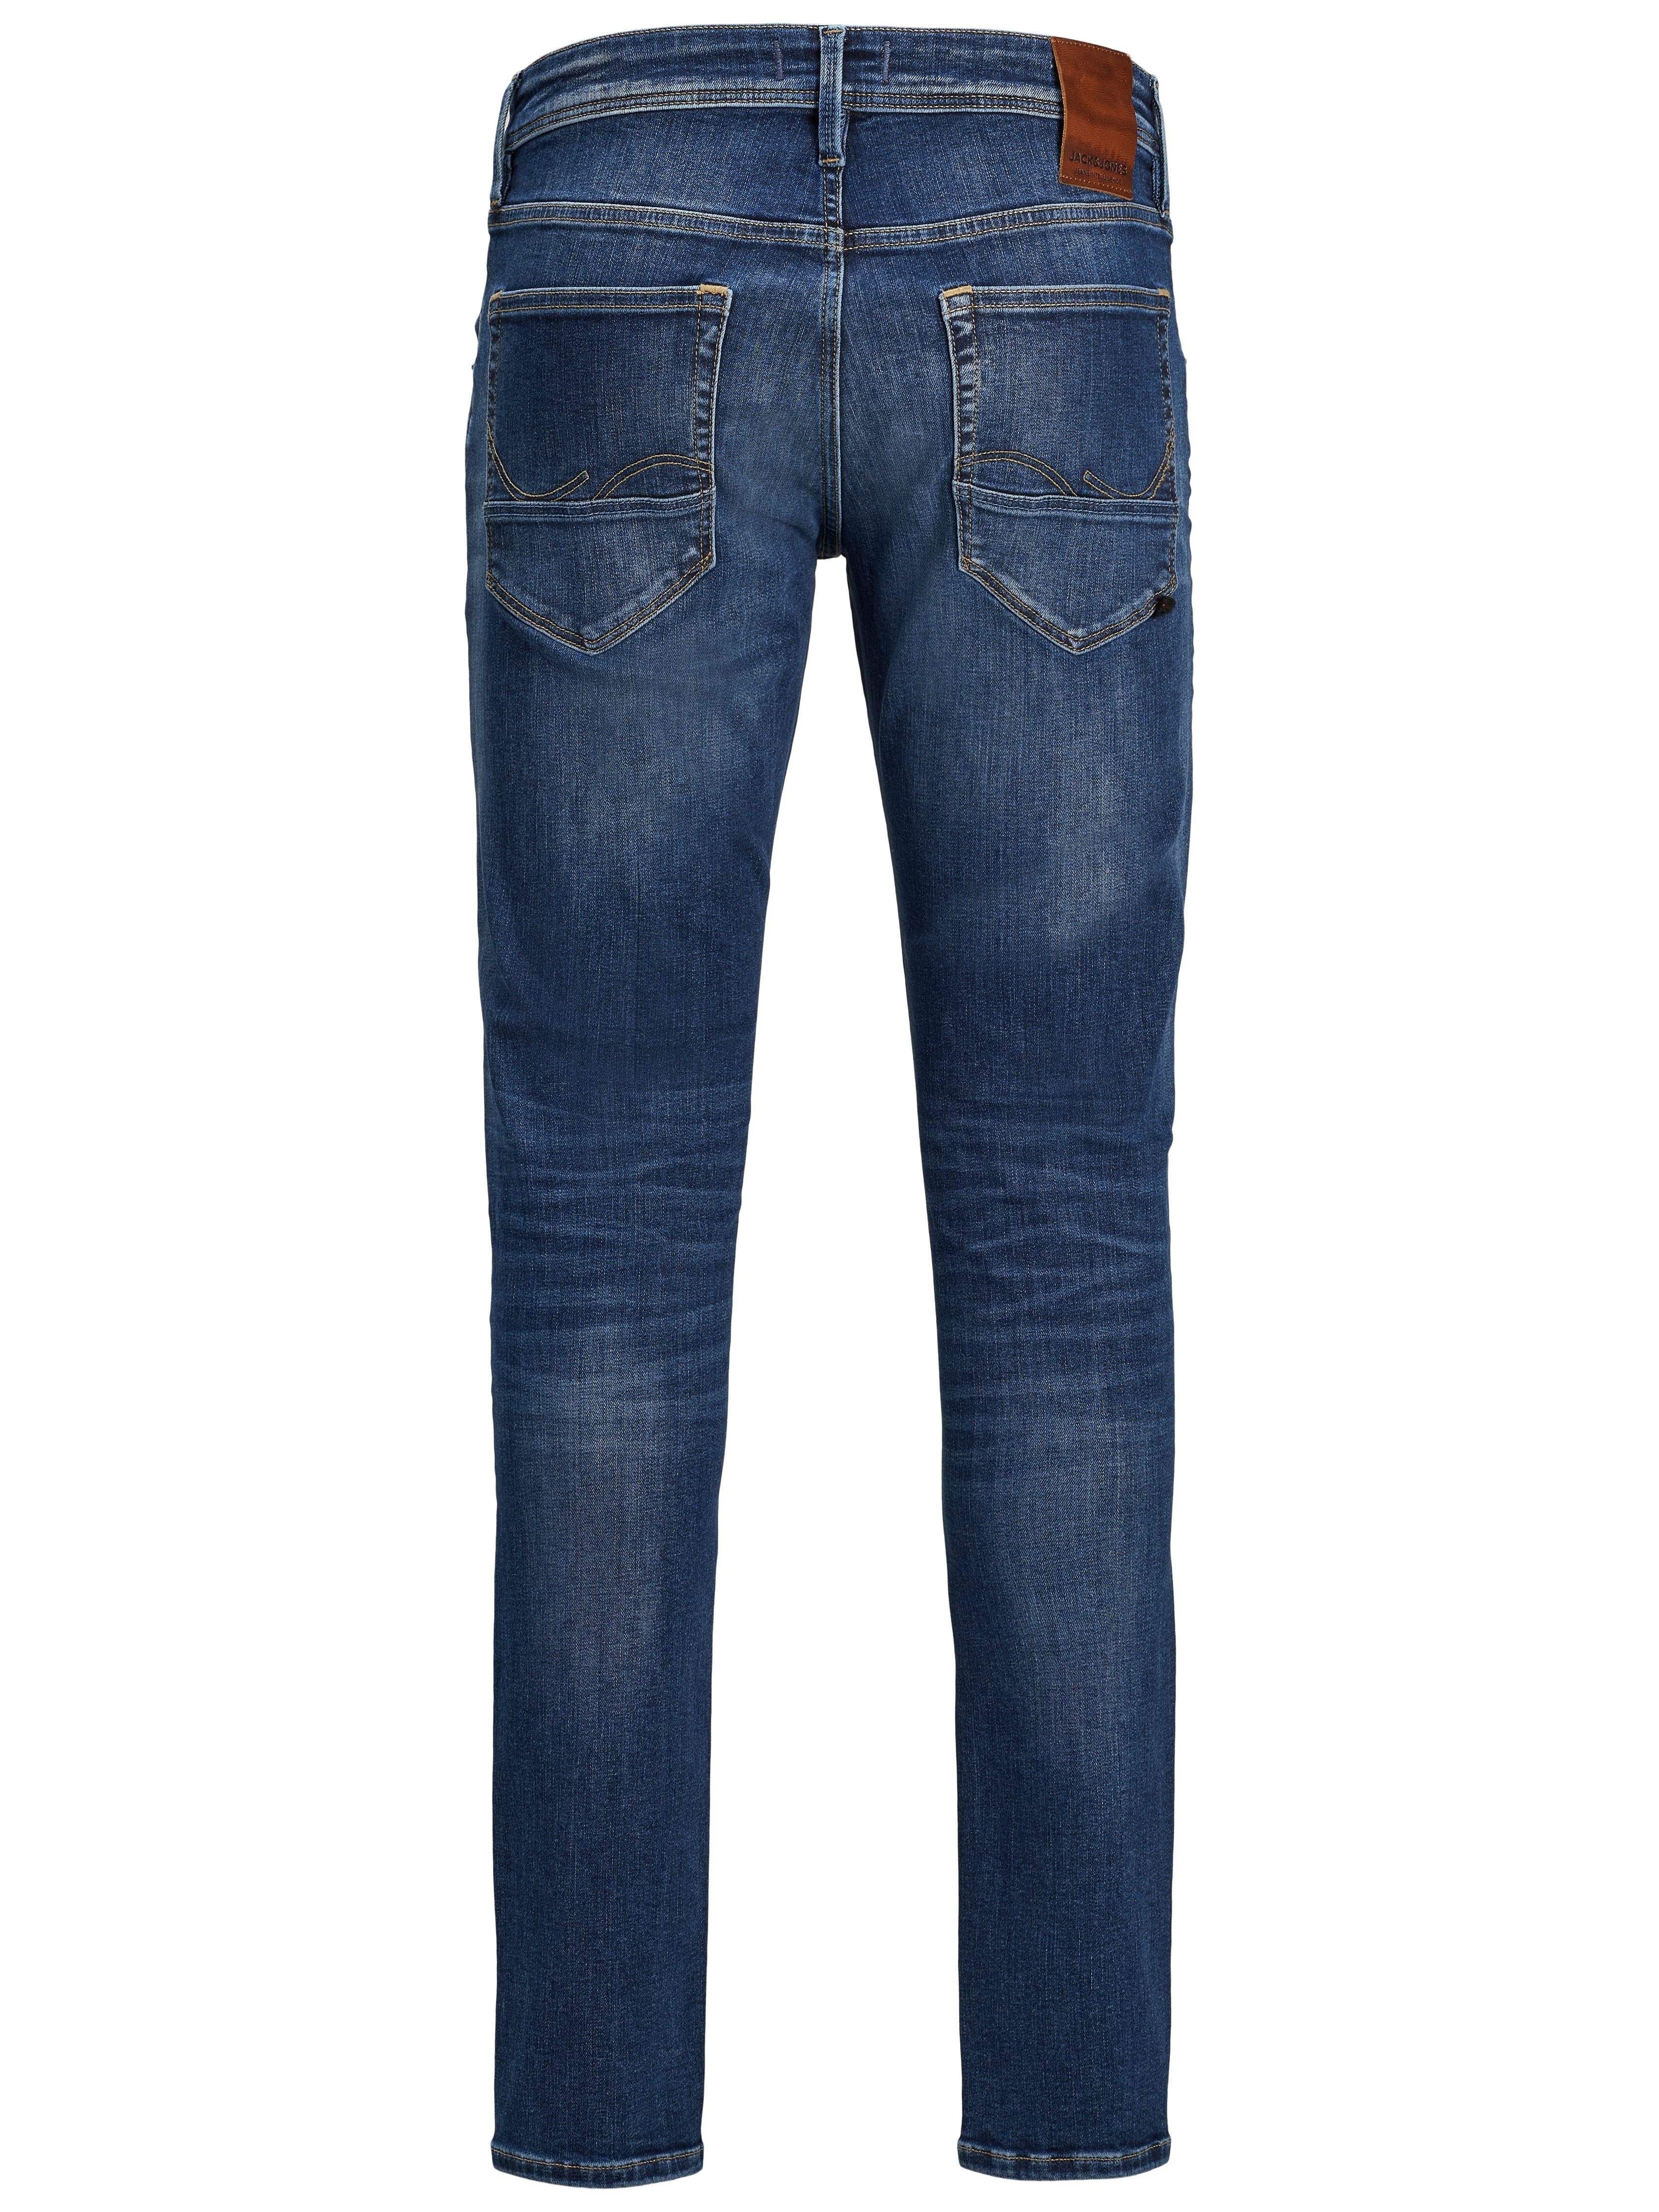 CARMAKOMA ONLY 5-Pocket-Jeans